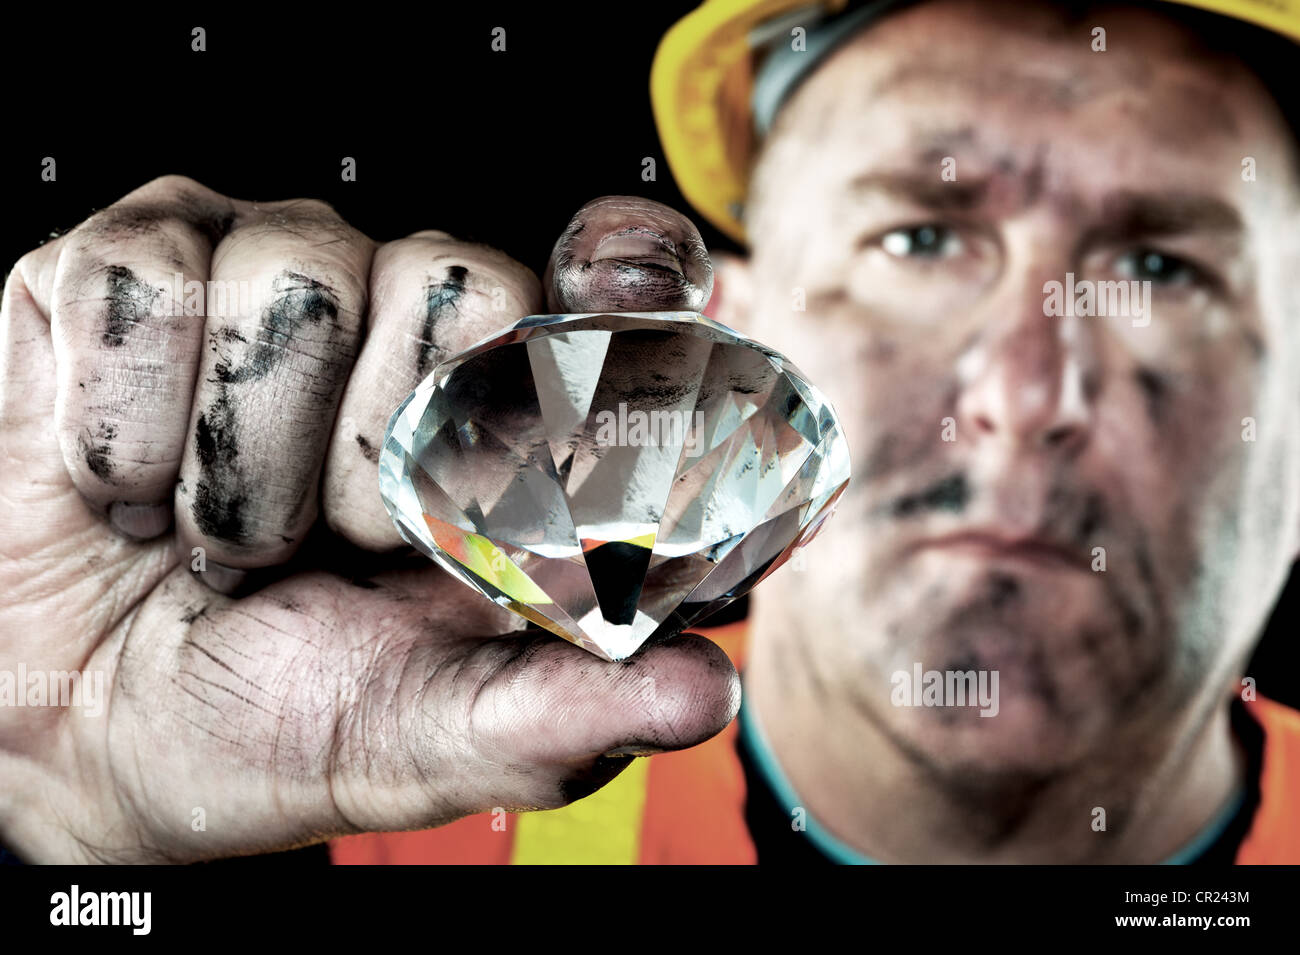 Schmutzige Diamanten Bergmann in Ruß bedeckt zeigt ein kostbares Juwel in  eine Kohle mine gefunden Stockfotografie - Alamy